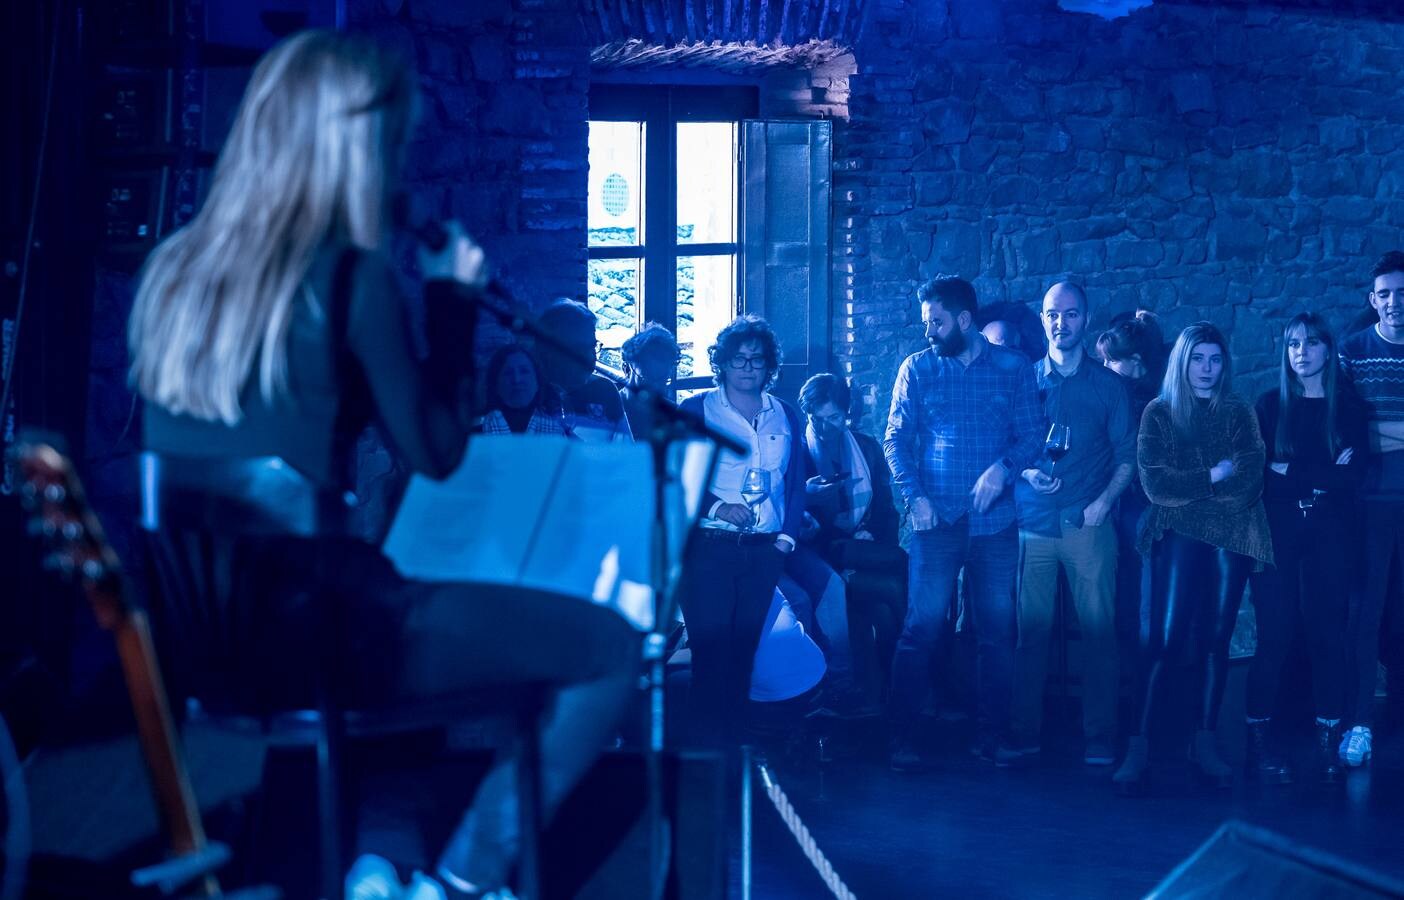 Floridablanca, Mr. Kilombo, Lou Cornago y Joana Serrat protagonizaron los conciertos diurnos de la primera jornada de Actual.